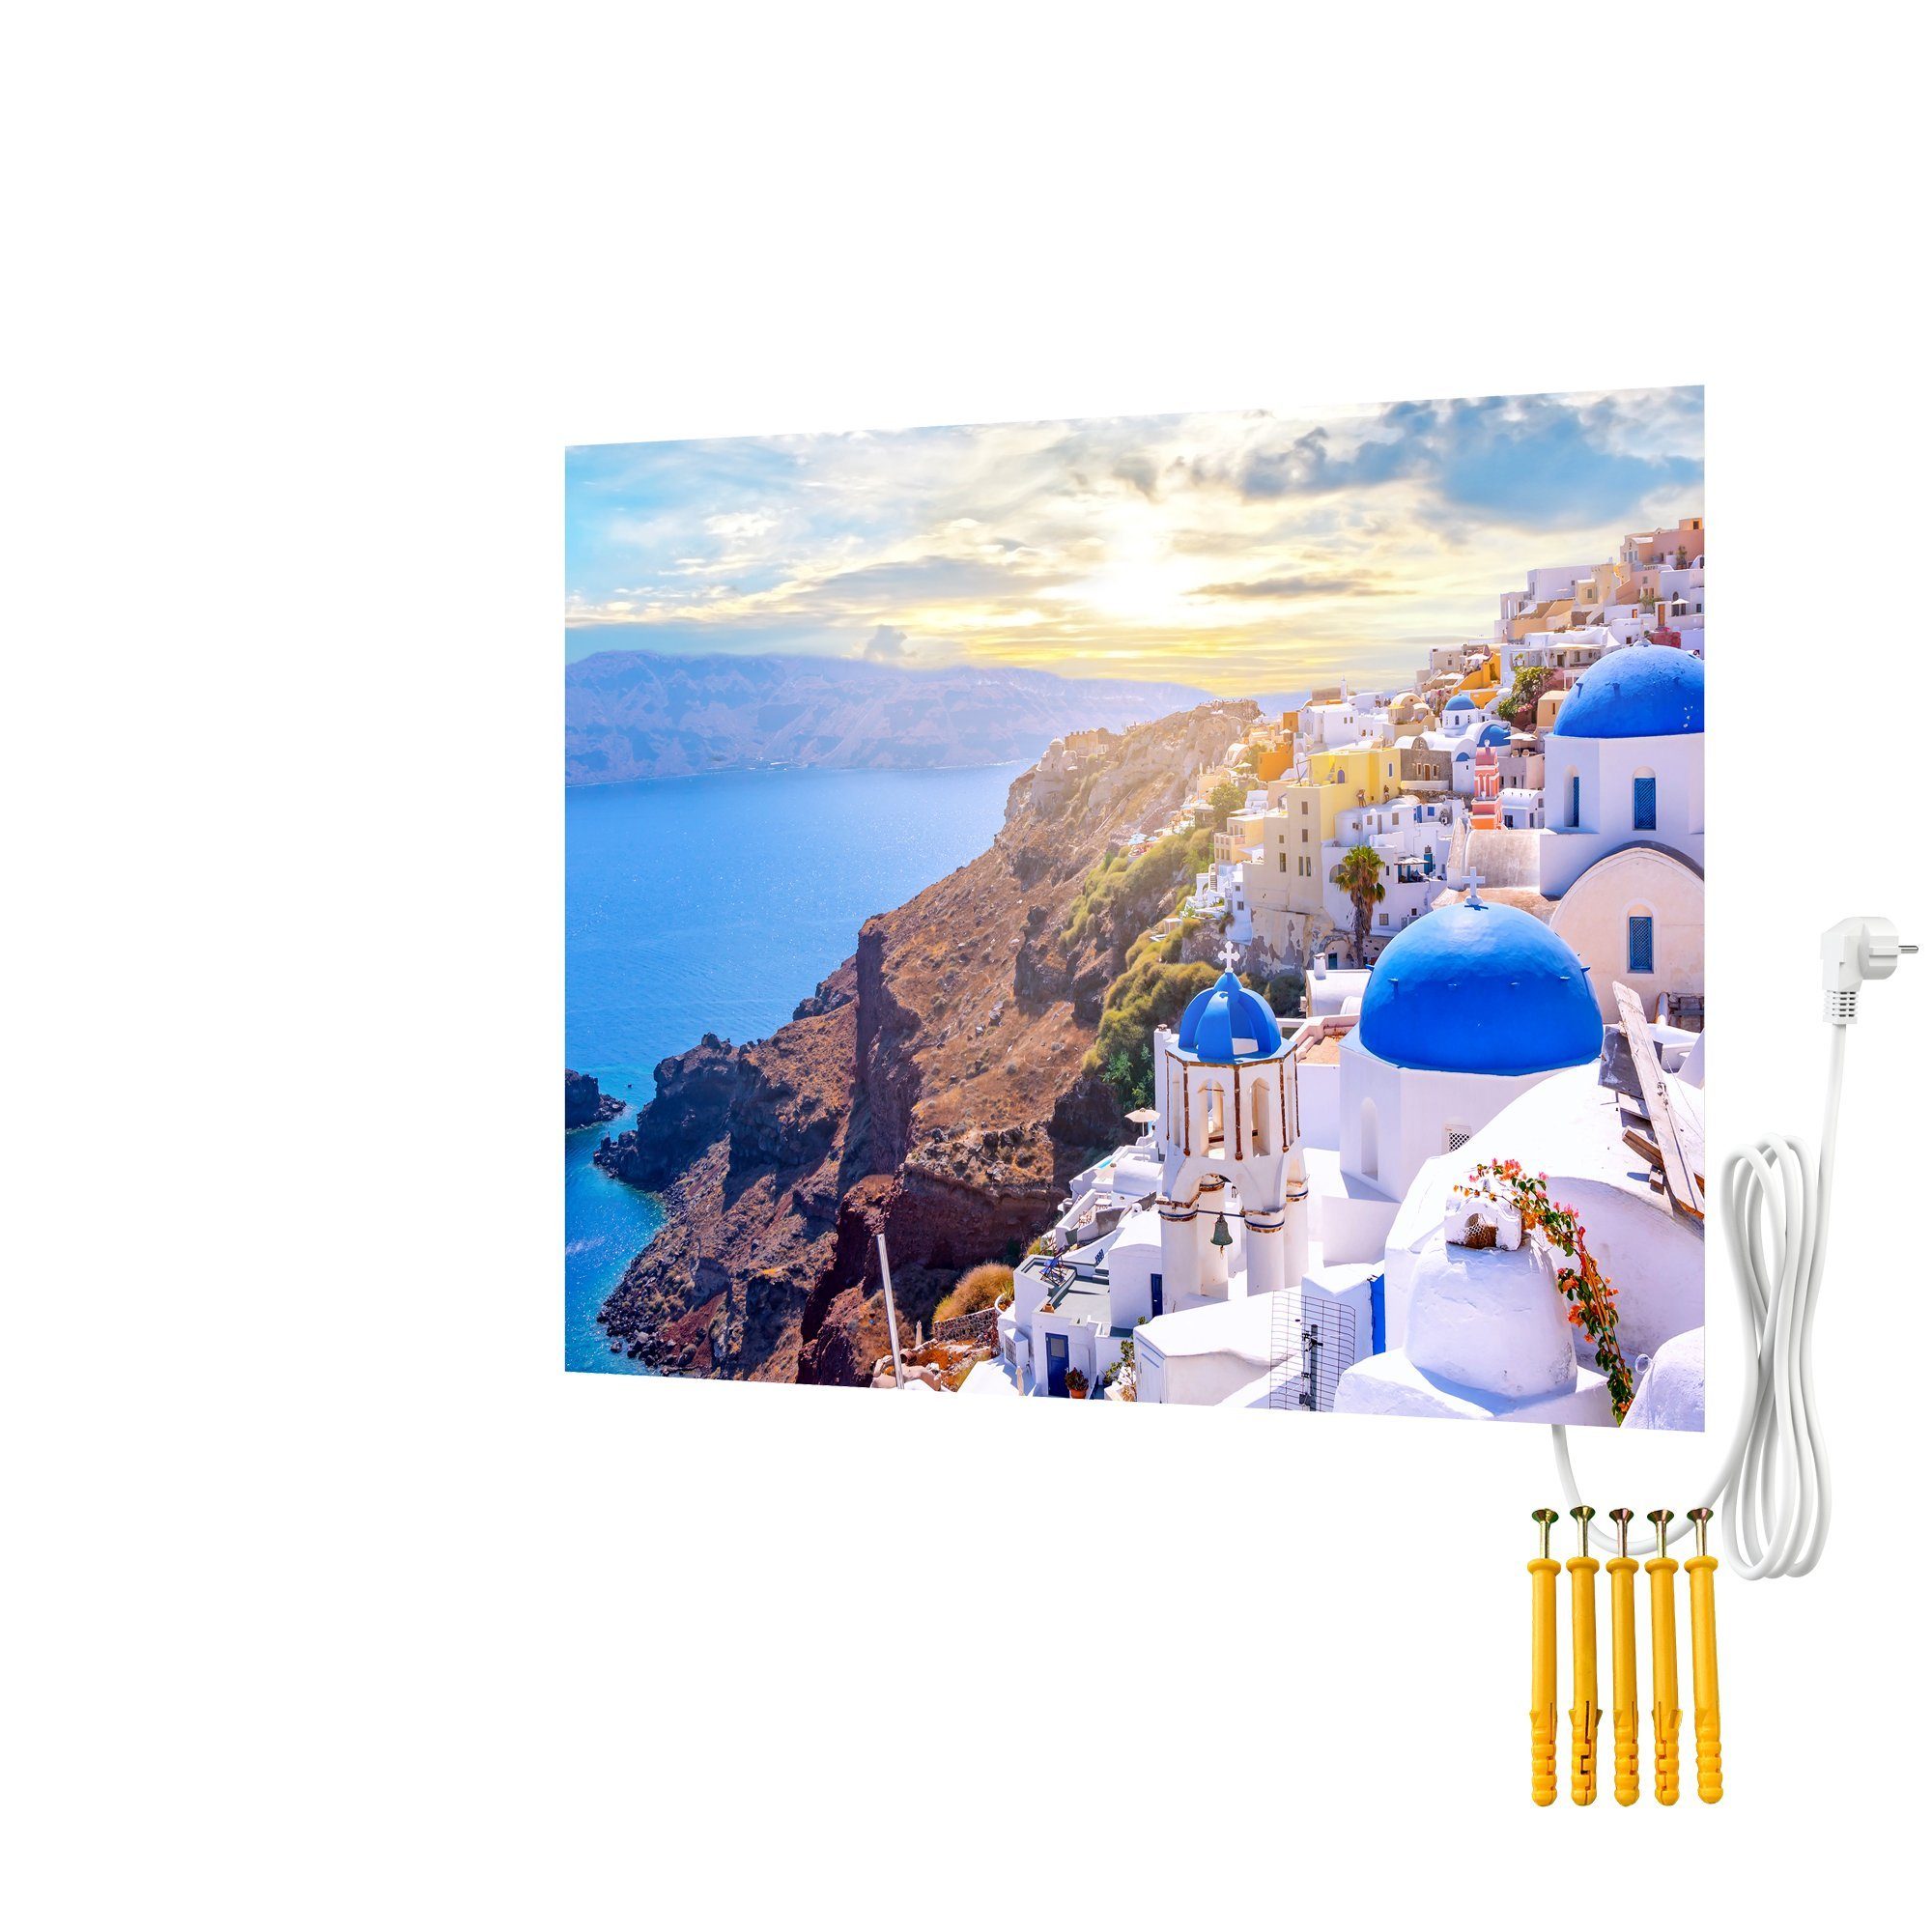 Bringer Infrarotheizung Bildheizung, Santorini, Motiv: Infrarotheizung, Bild Griechenland Rahmenlose